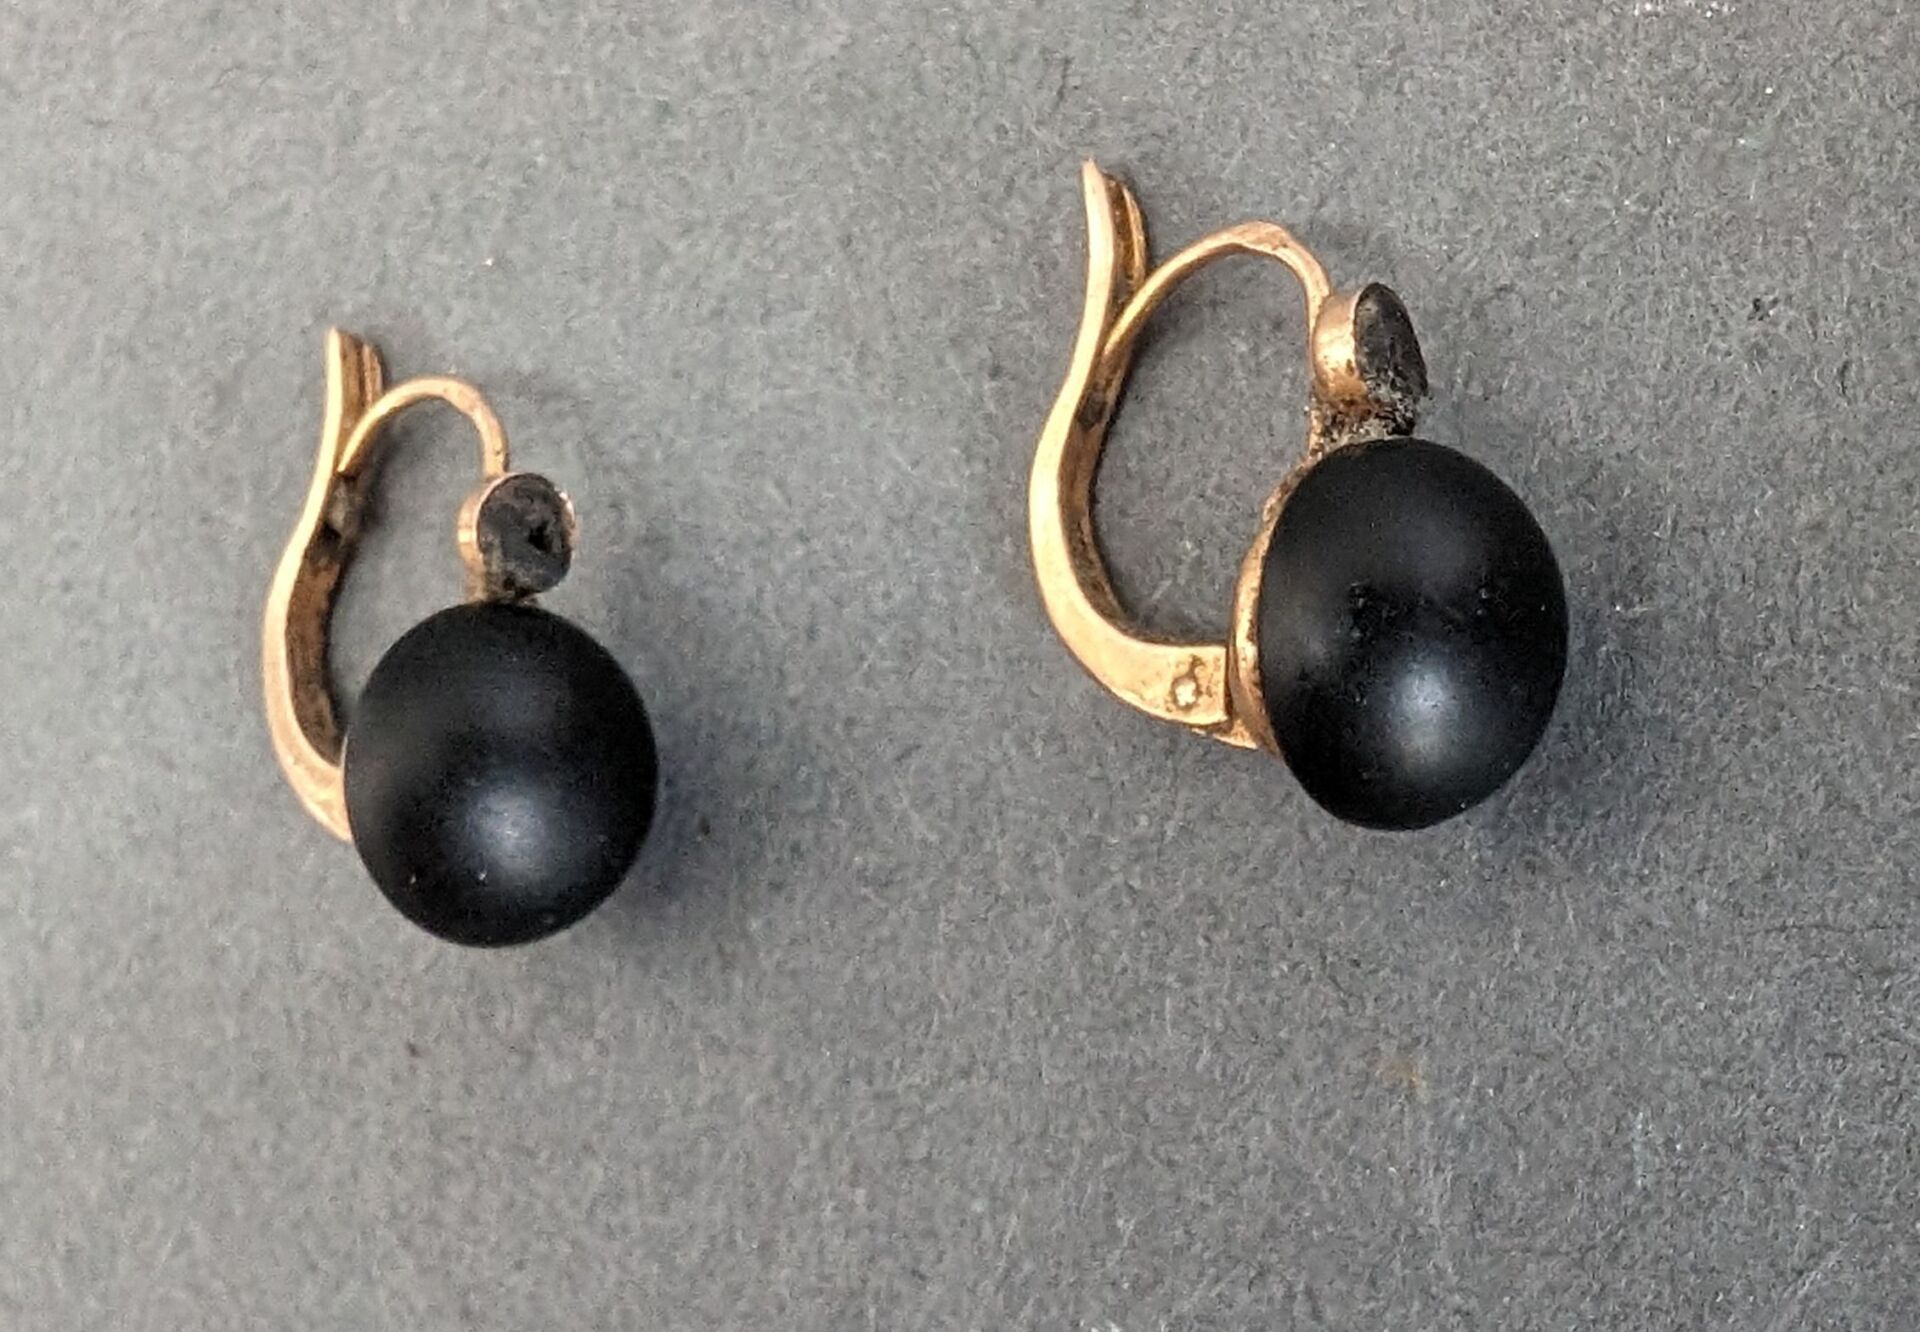 Null Ein Paar Ohrringe aus Gold und schwarzem Stein.
Bruttogewicht: 1,78 g